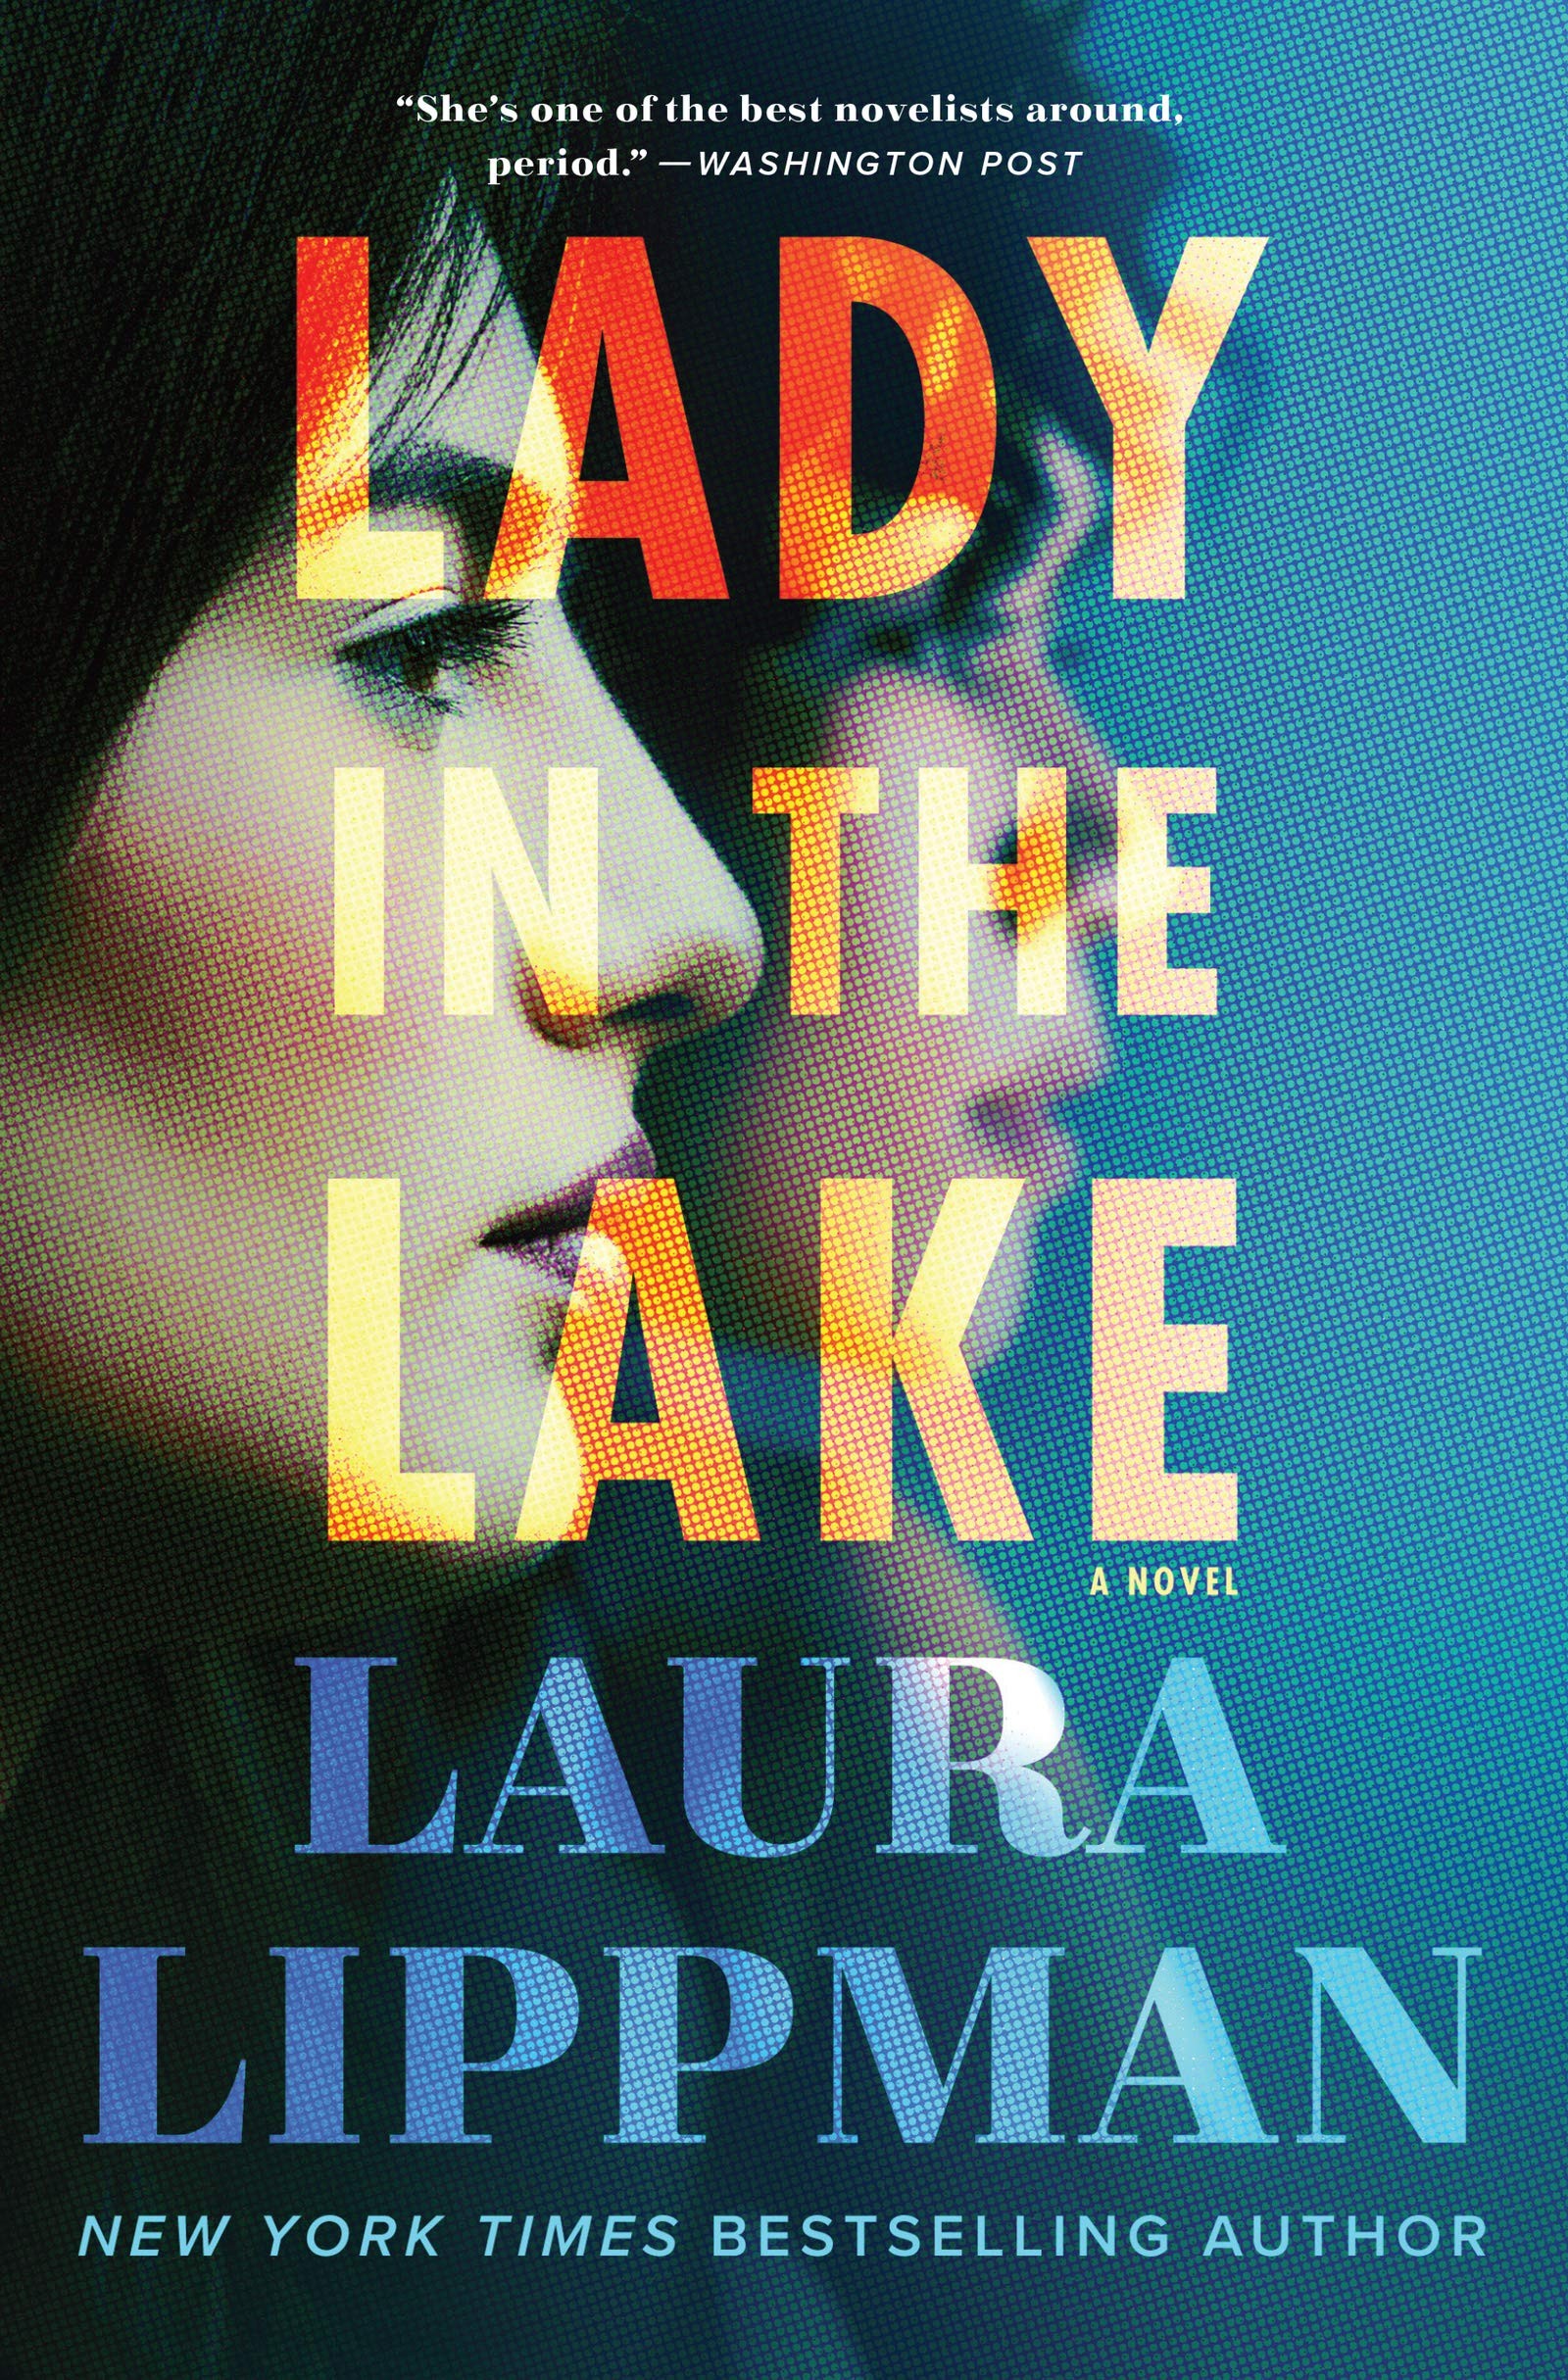 Capa do livro de Laura Lippman em que a série Lady in the Lake é baseada (Foto: Divulgação)